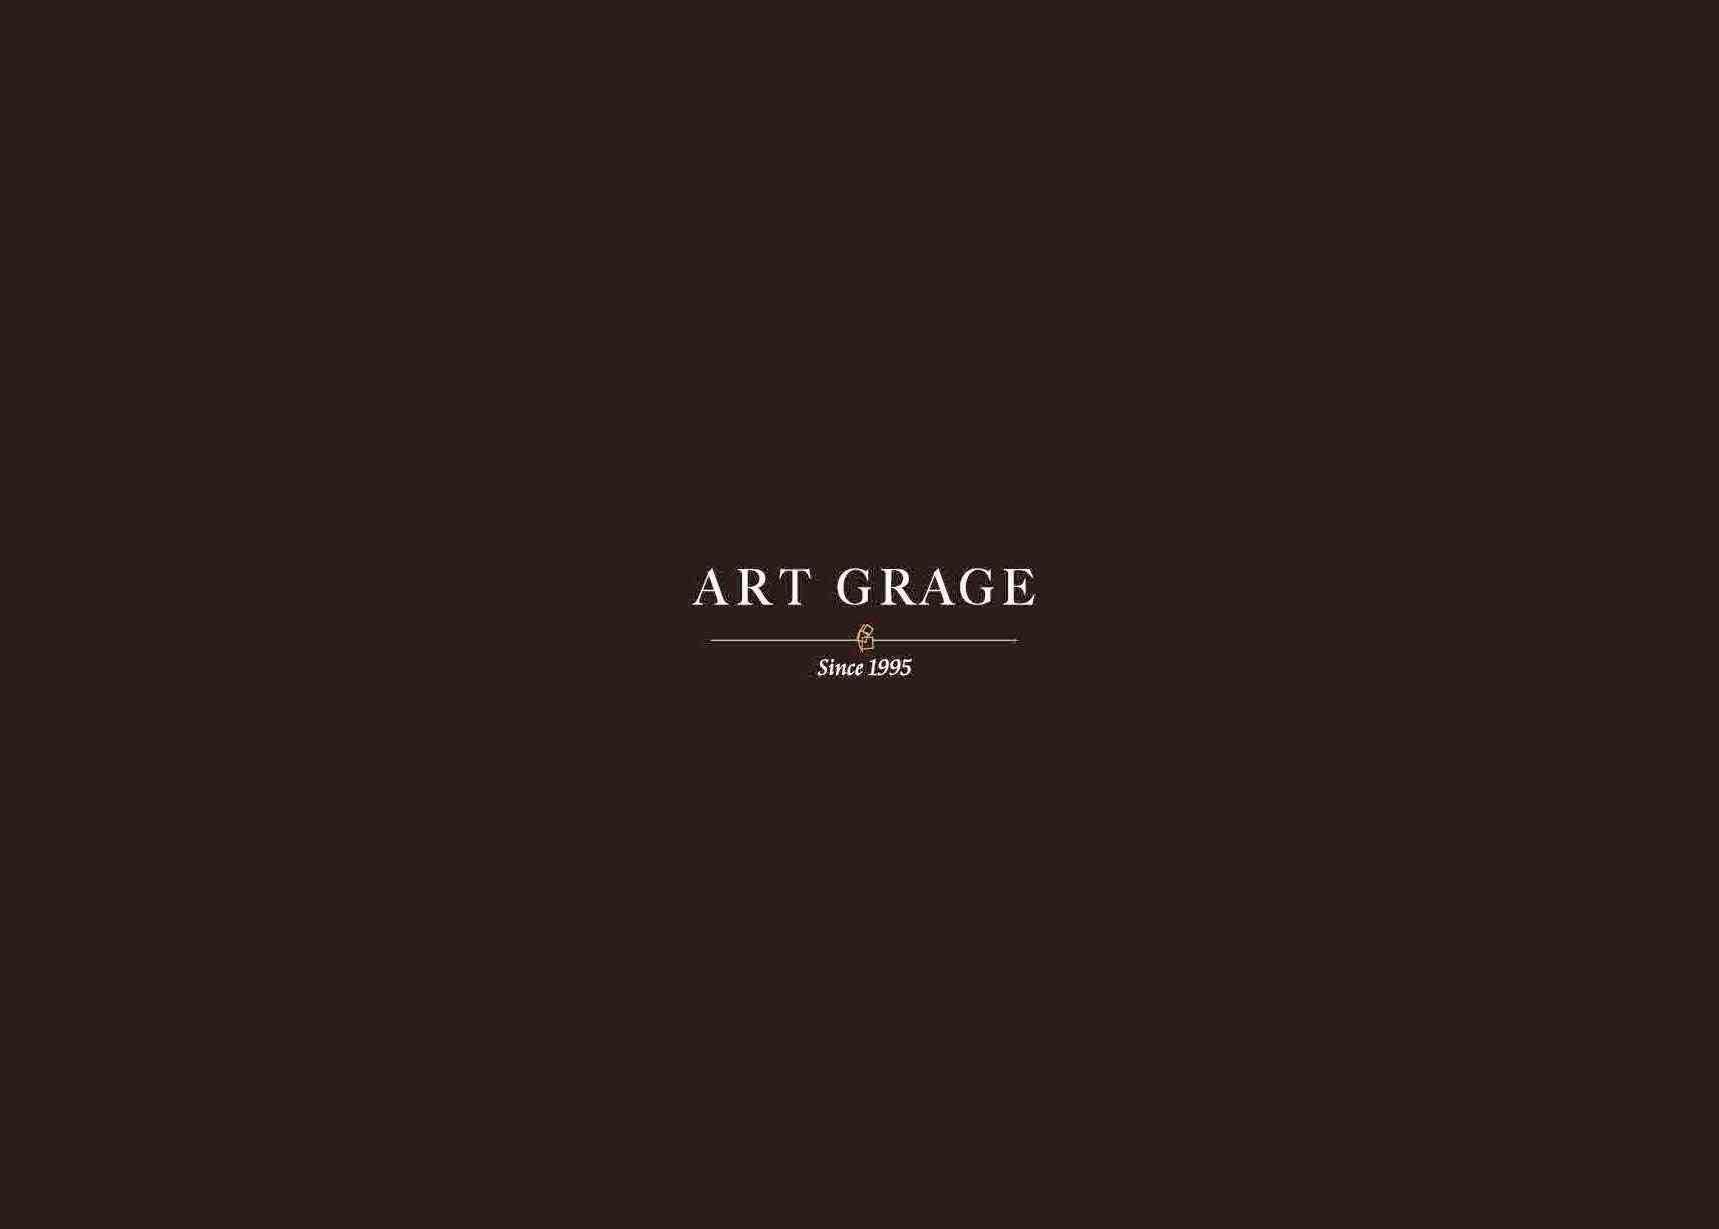 ART GRAGE